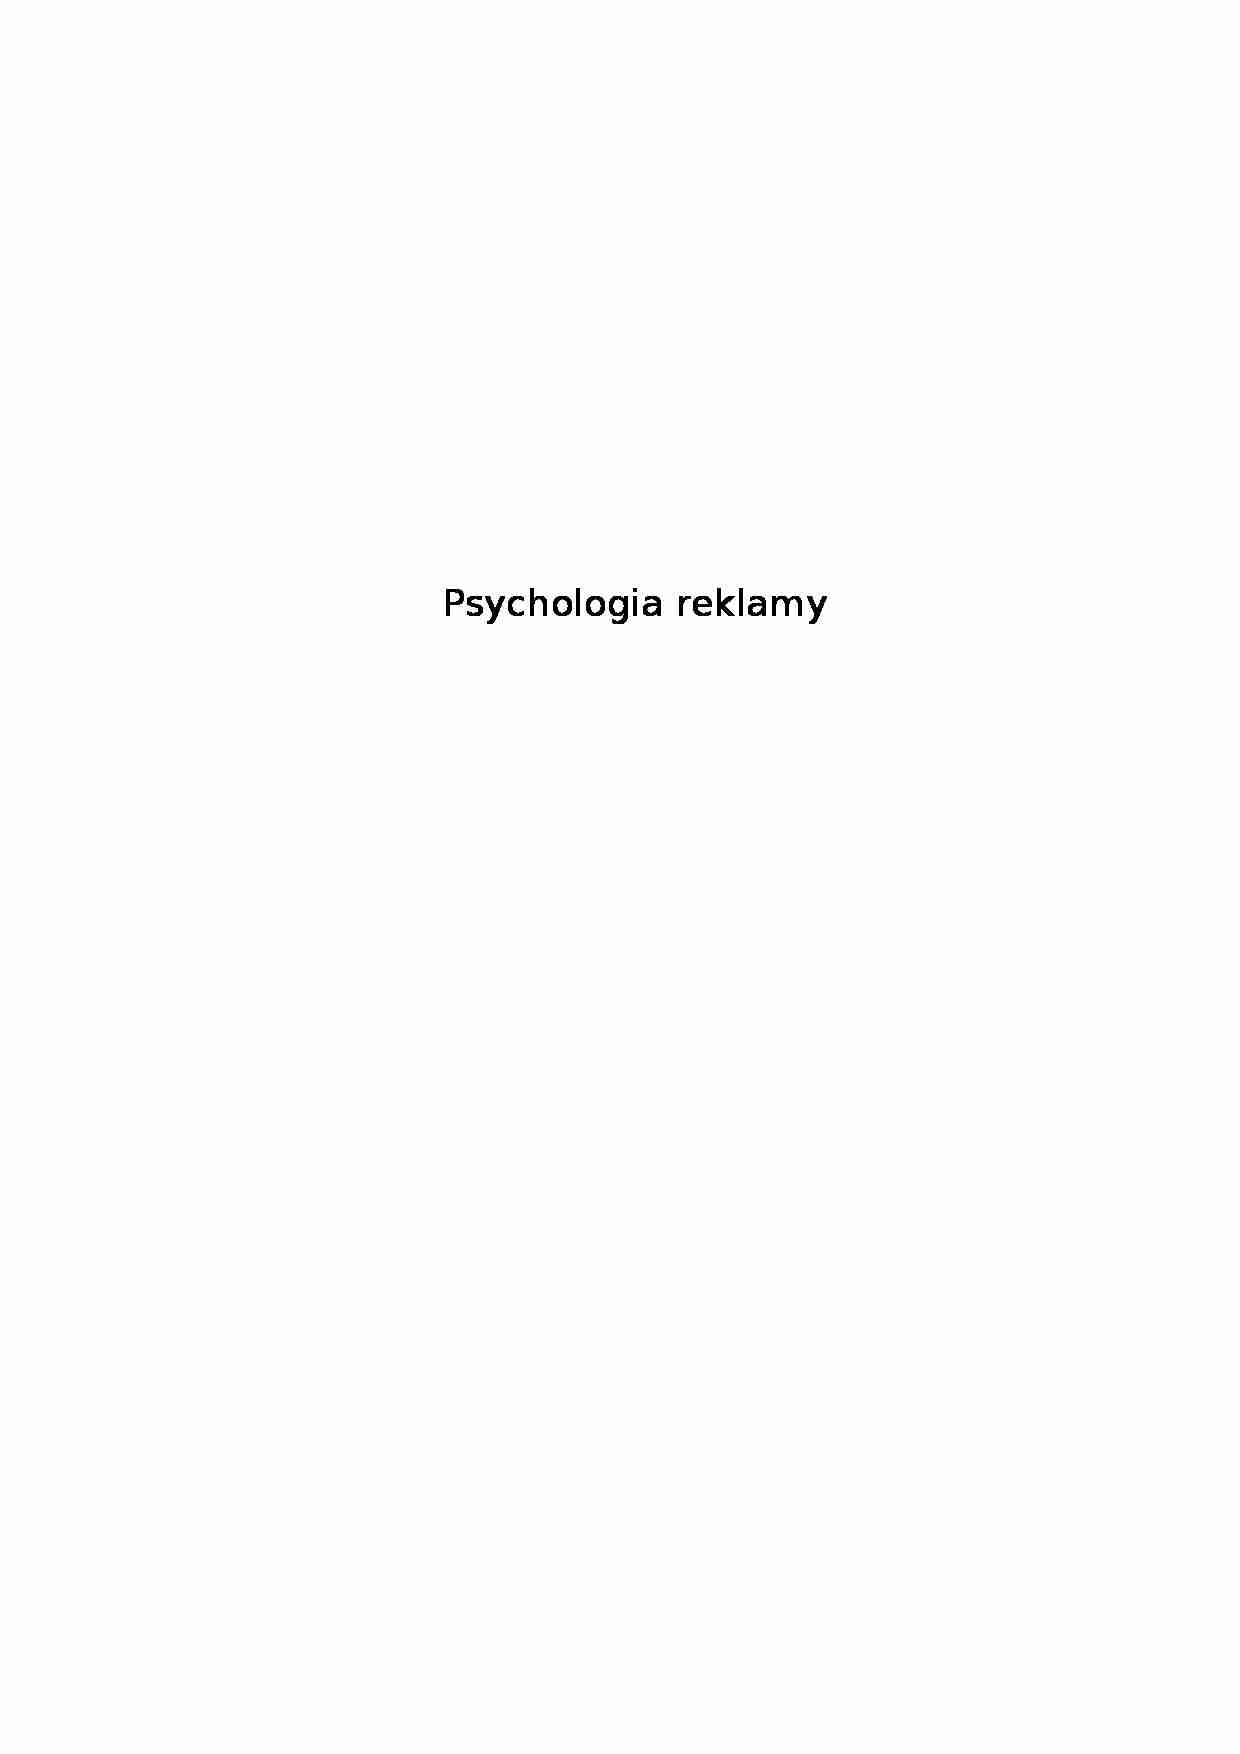 Psychologia reklamy (30 stron) - strona 1